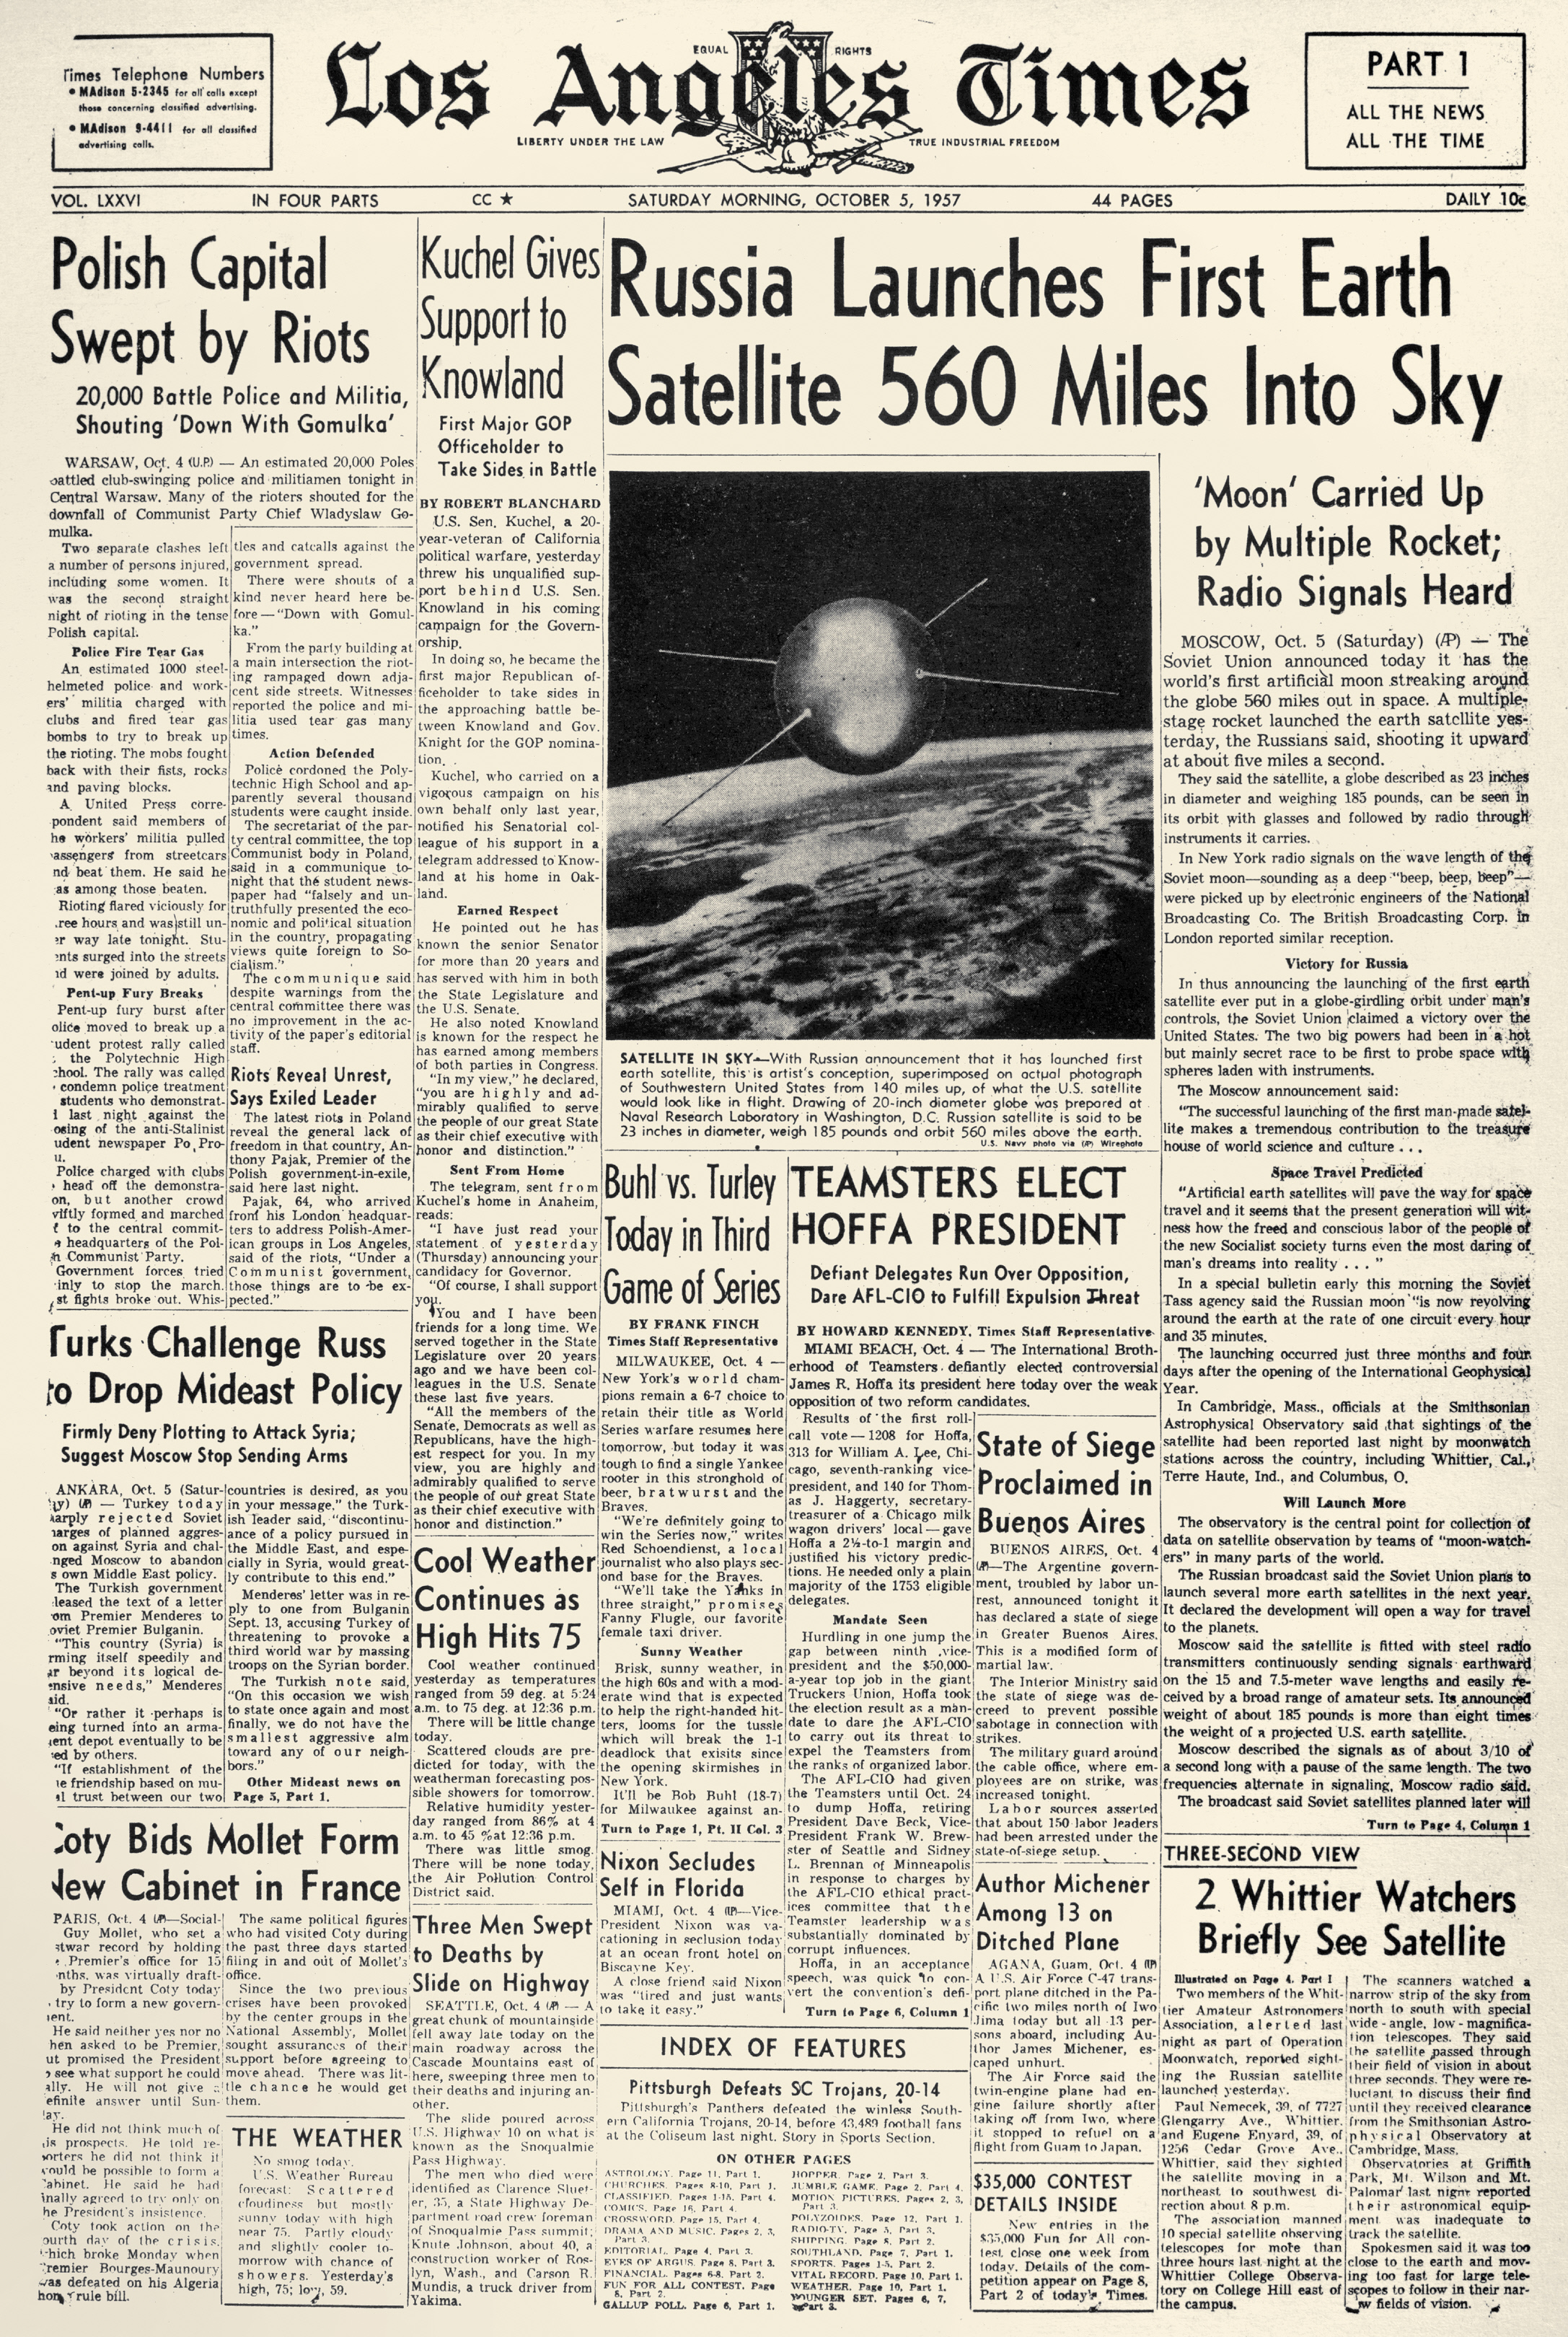 Primera página del periódico “Los Angeles Times”, 5 de octubre de 1957